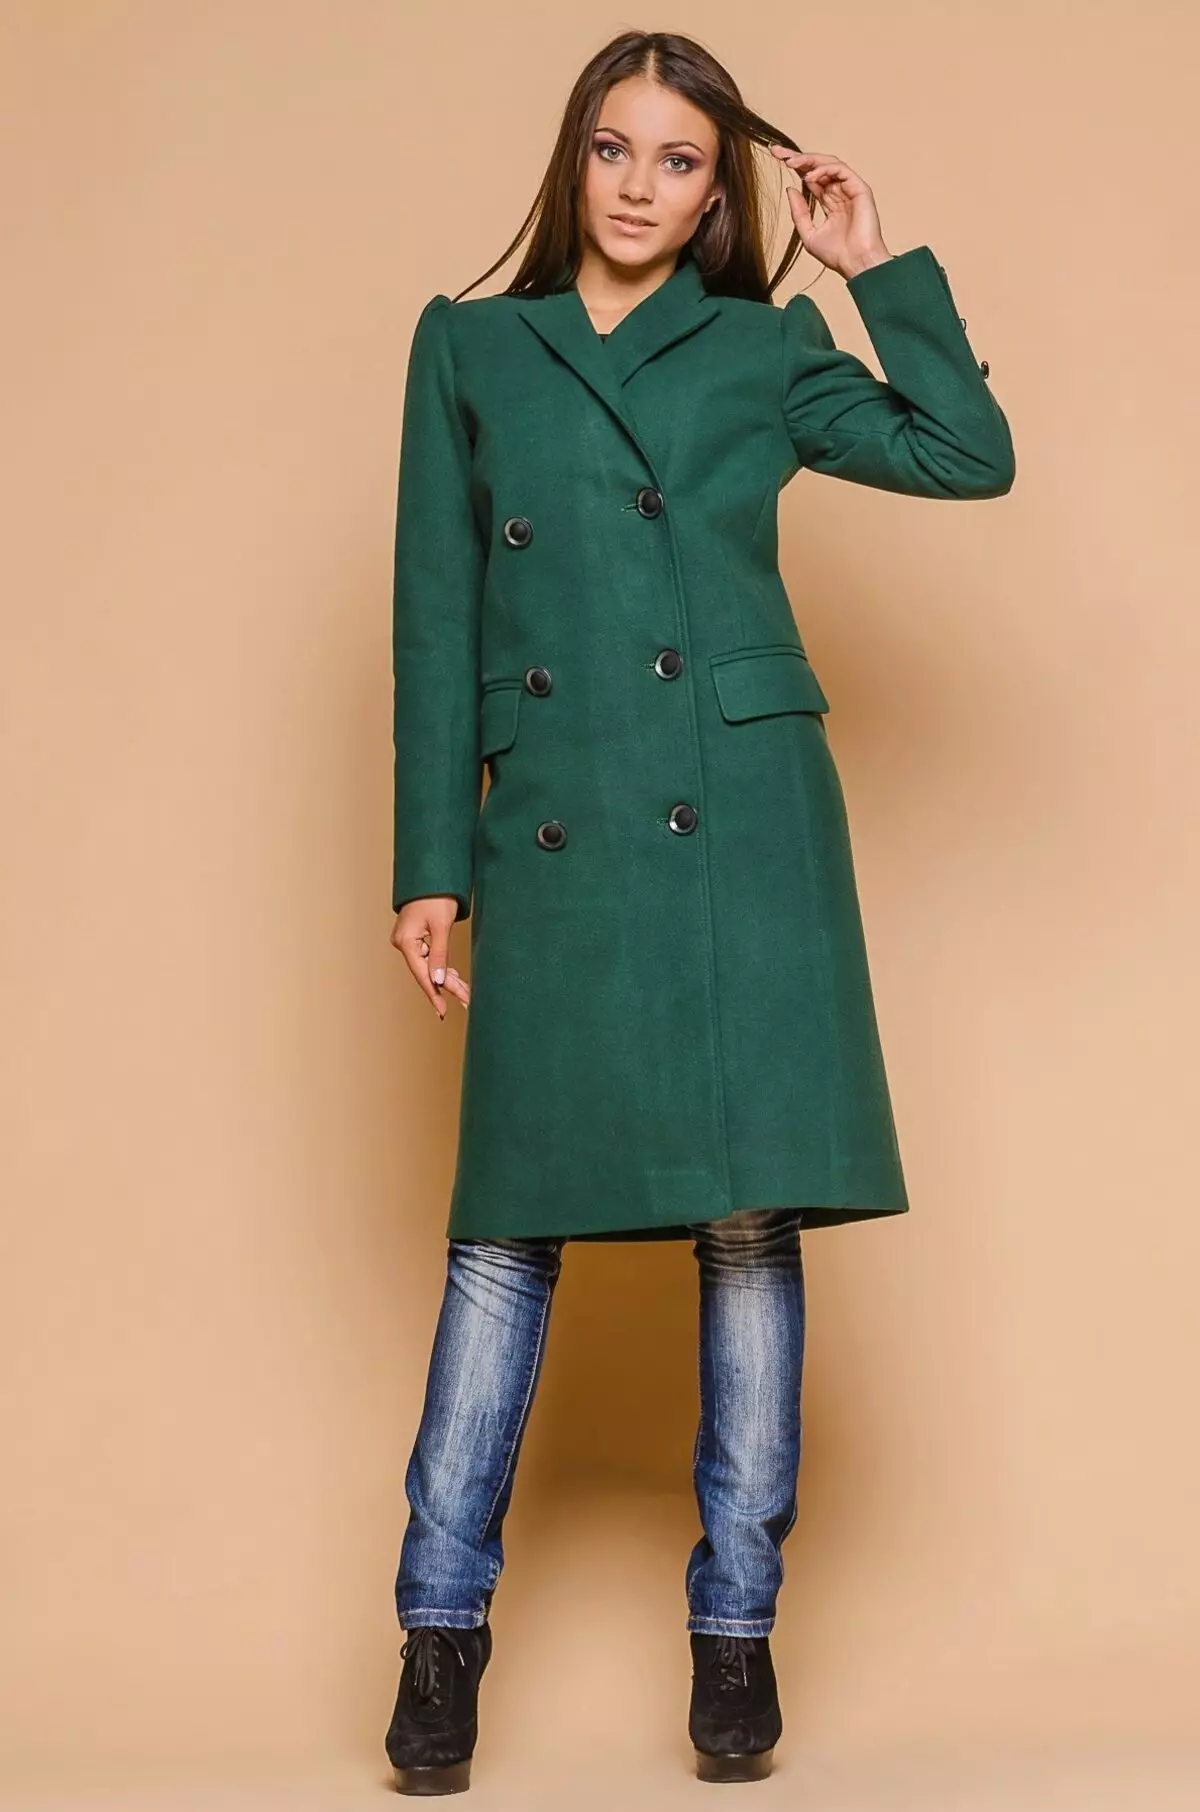 Qué llevar un abrigo verde (122 fotos): verde oscuro, qué bufanda se ajustará, bolsa, accesorios, abrigo con un collar de inglés 601_15